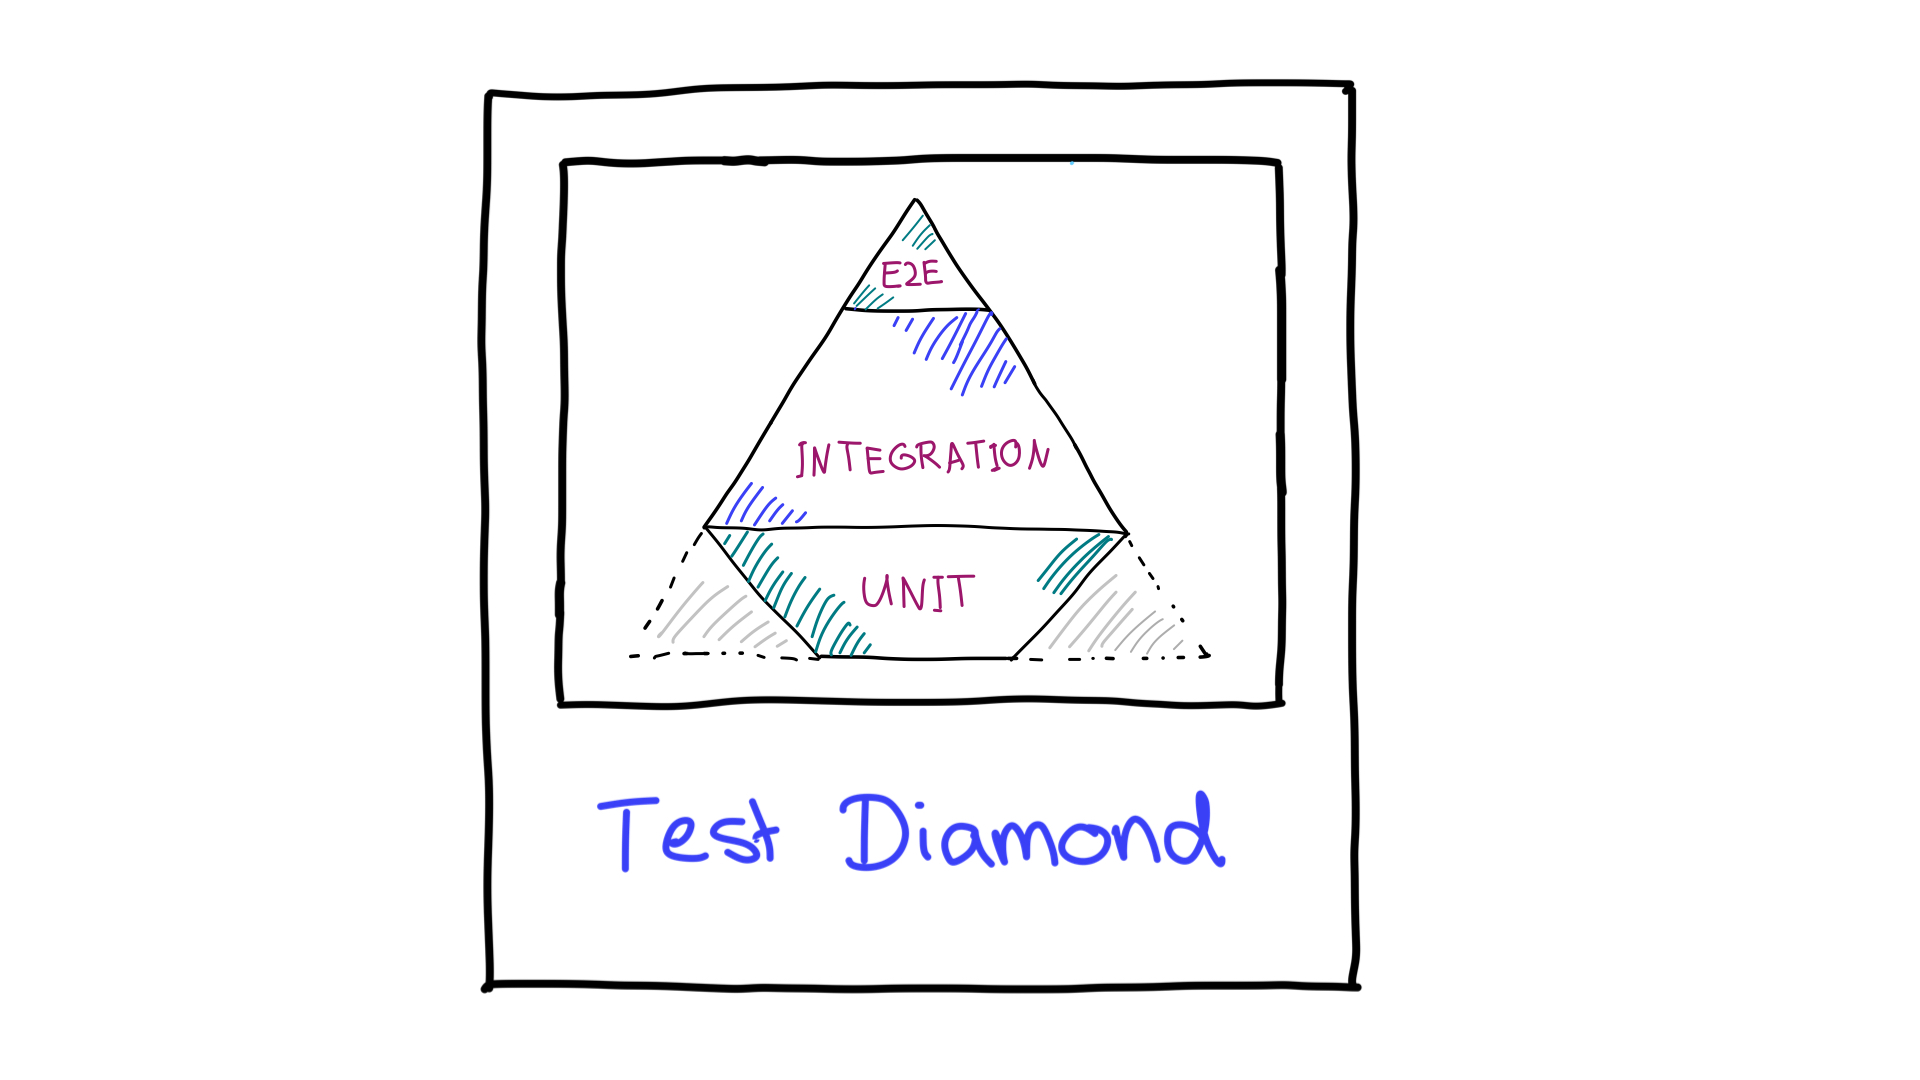 테스트 다이아몬드입니다.